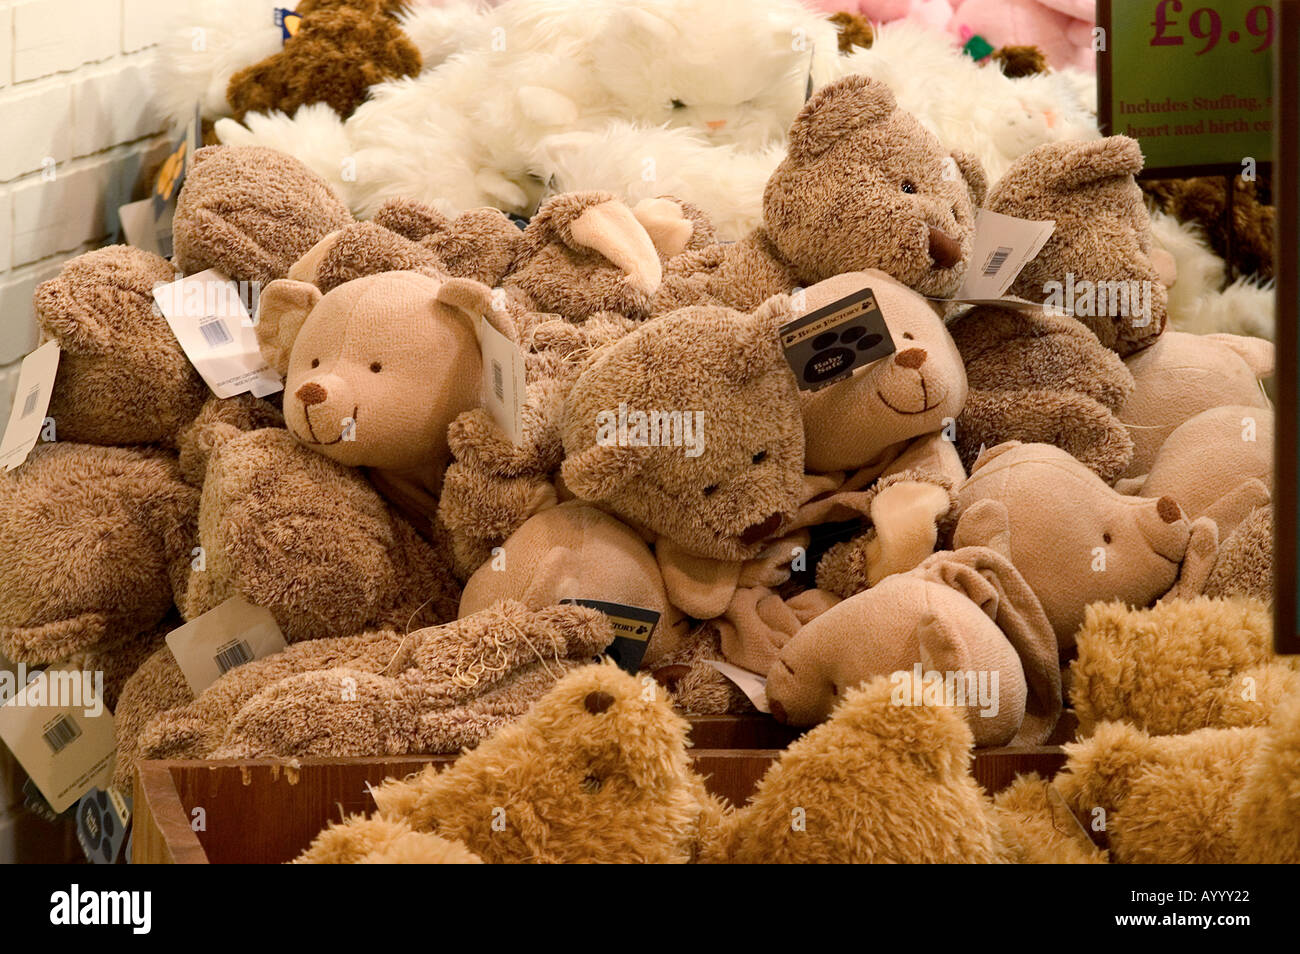 teddy bear factory